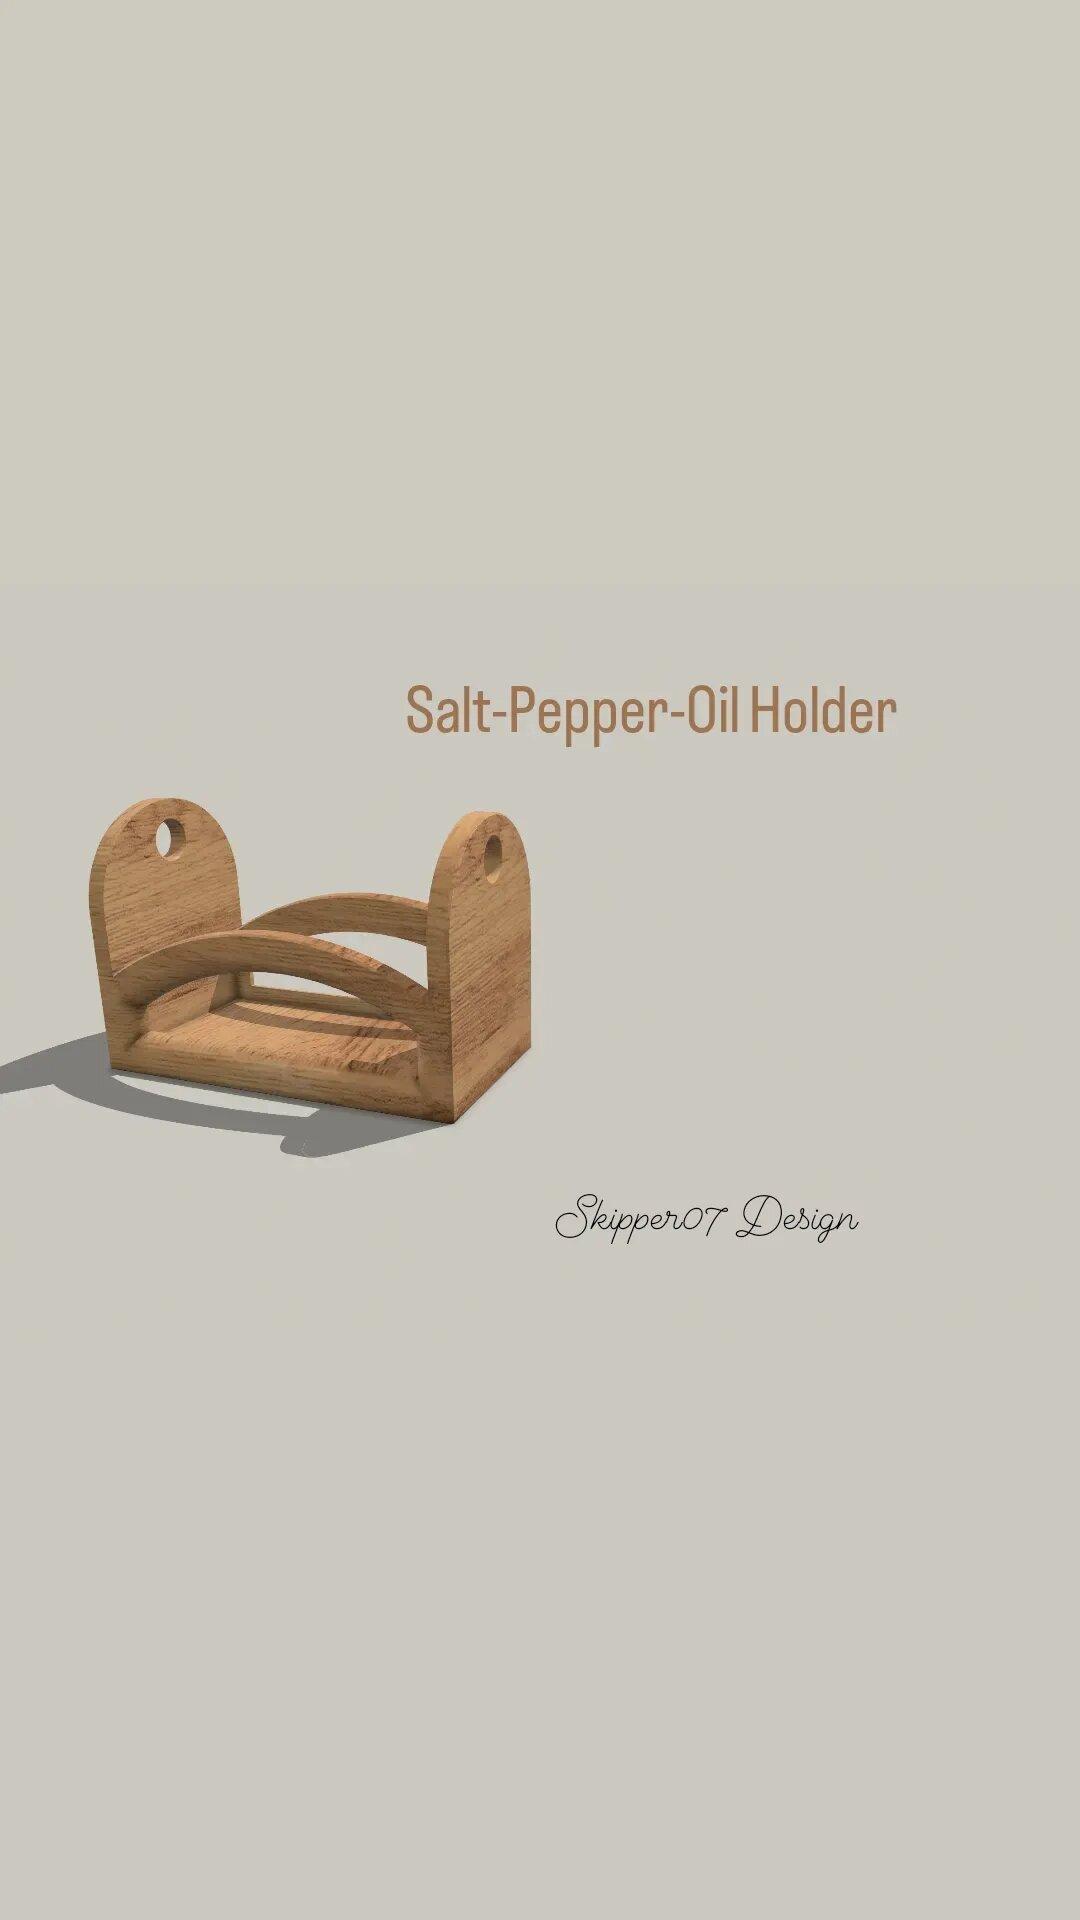 Salt-Pepper-Oil Holder 3.0.stl 3d model